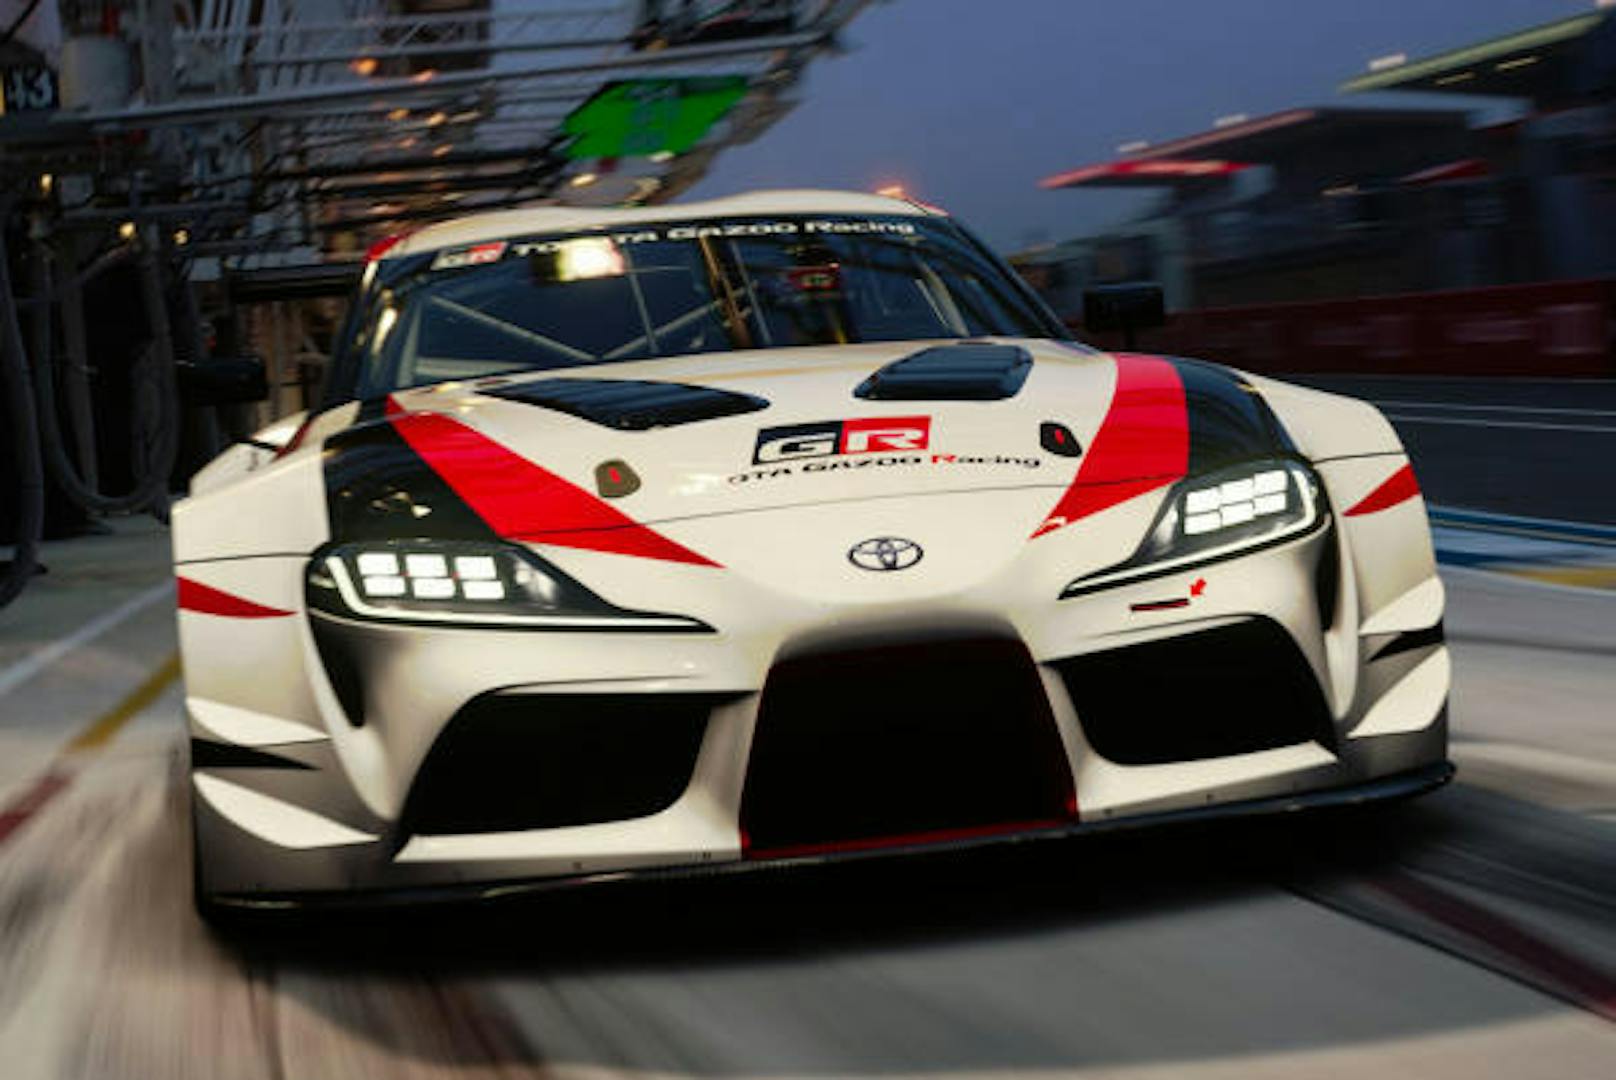 Der Toyota GR Supra Racing Conceptcar feierte auf dem Automobilsalon in Genf 2018 seine Weltpremiere. Das aufsehenerregende Konzeptfahrzeug ist nun in Gran Turismo Sport exklusiv auf PlayStation verfugbar.